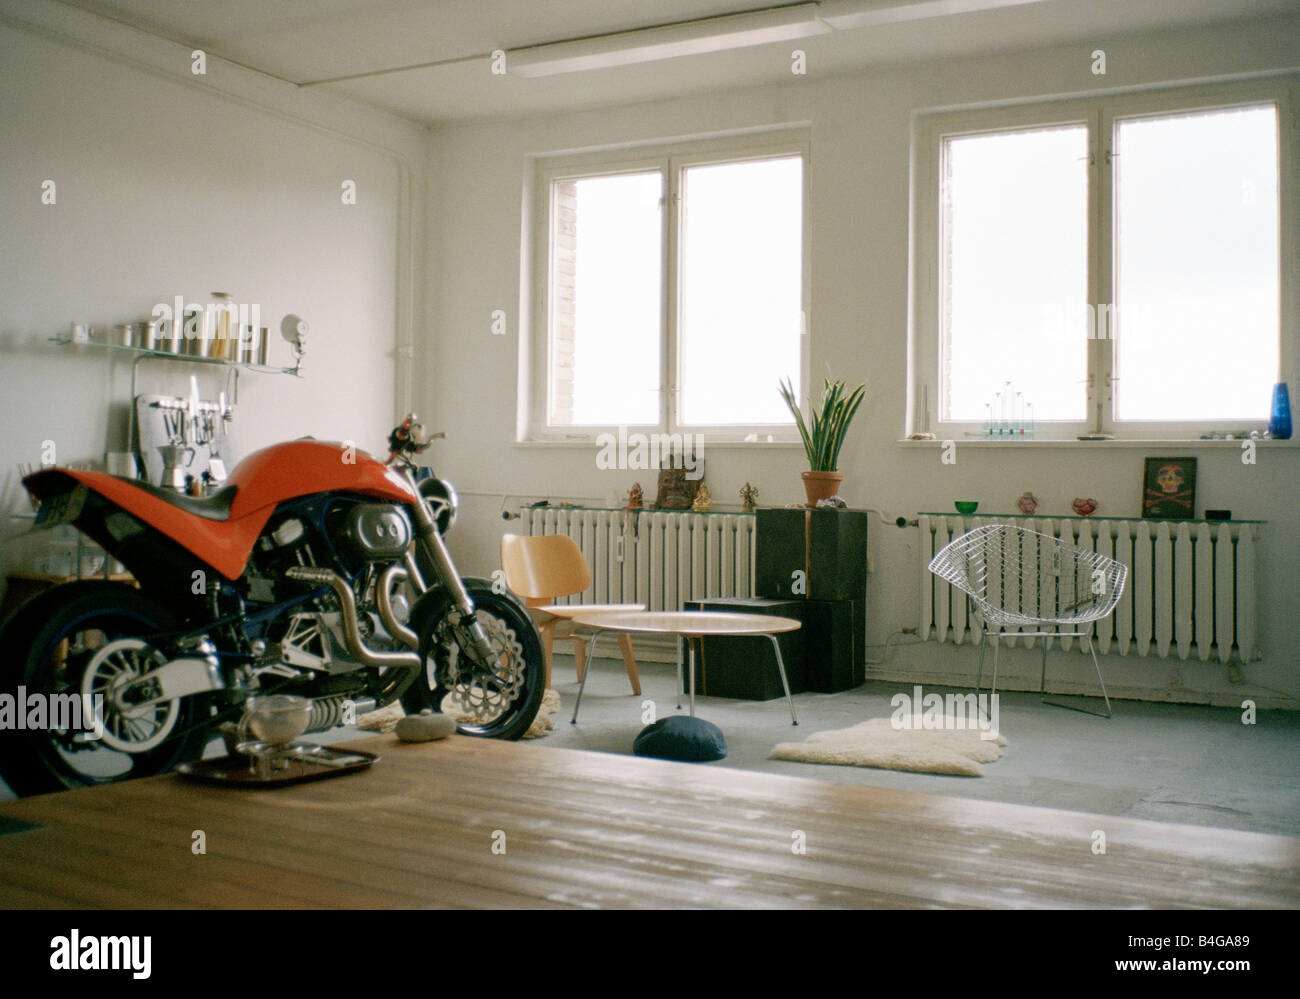 Ein Motorrad innerhalb einer Wohnung Stockfotografie - Alamy